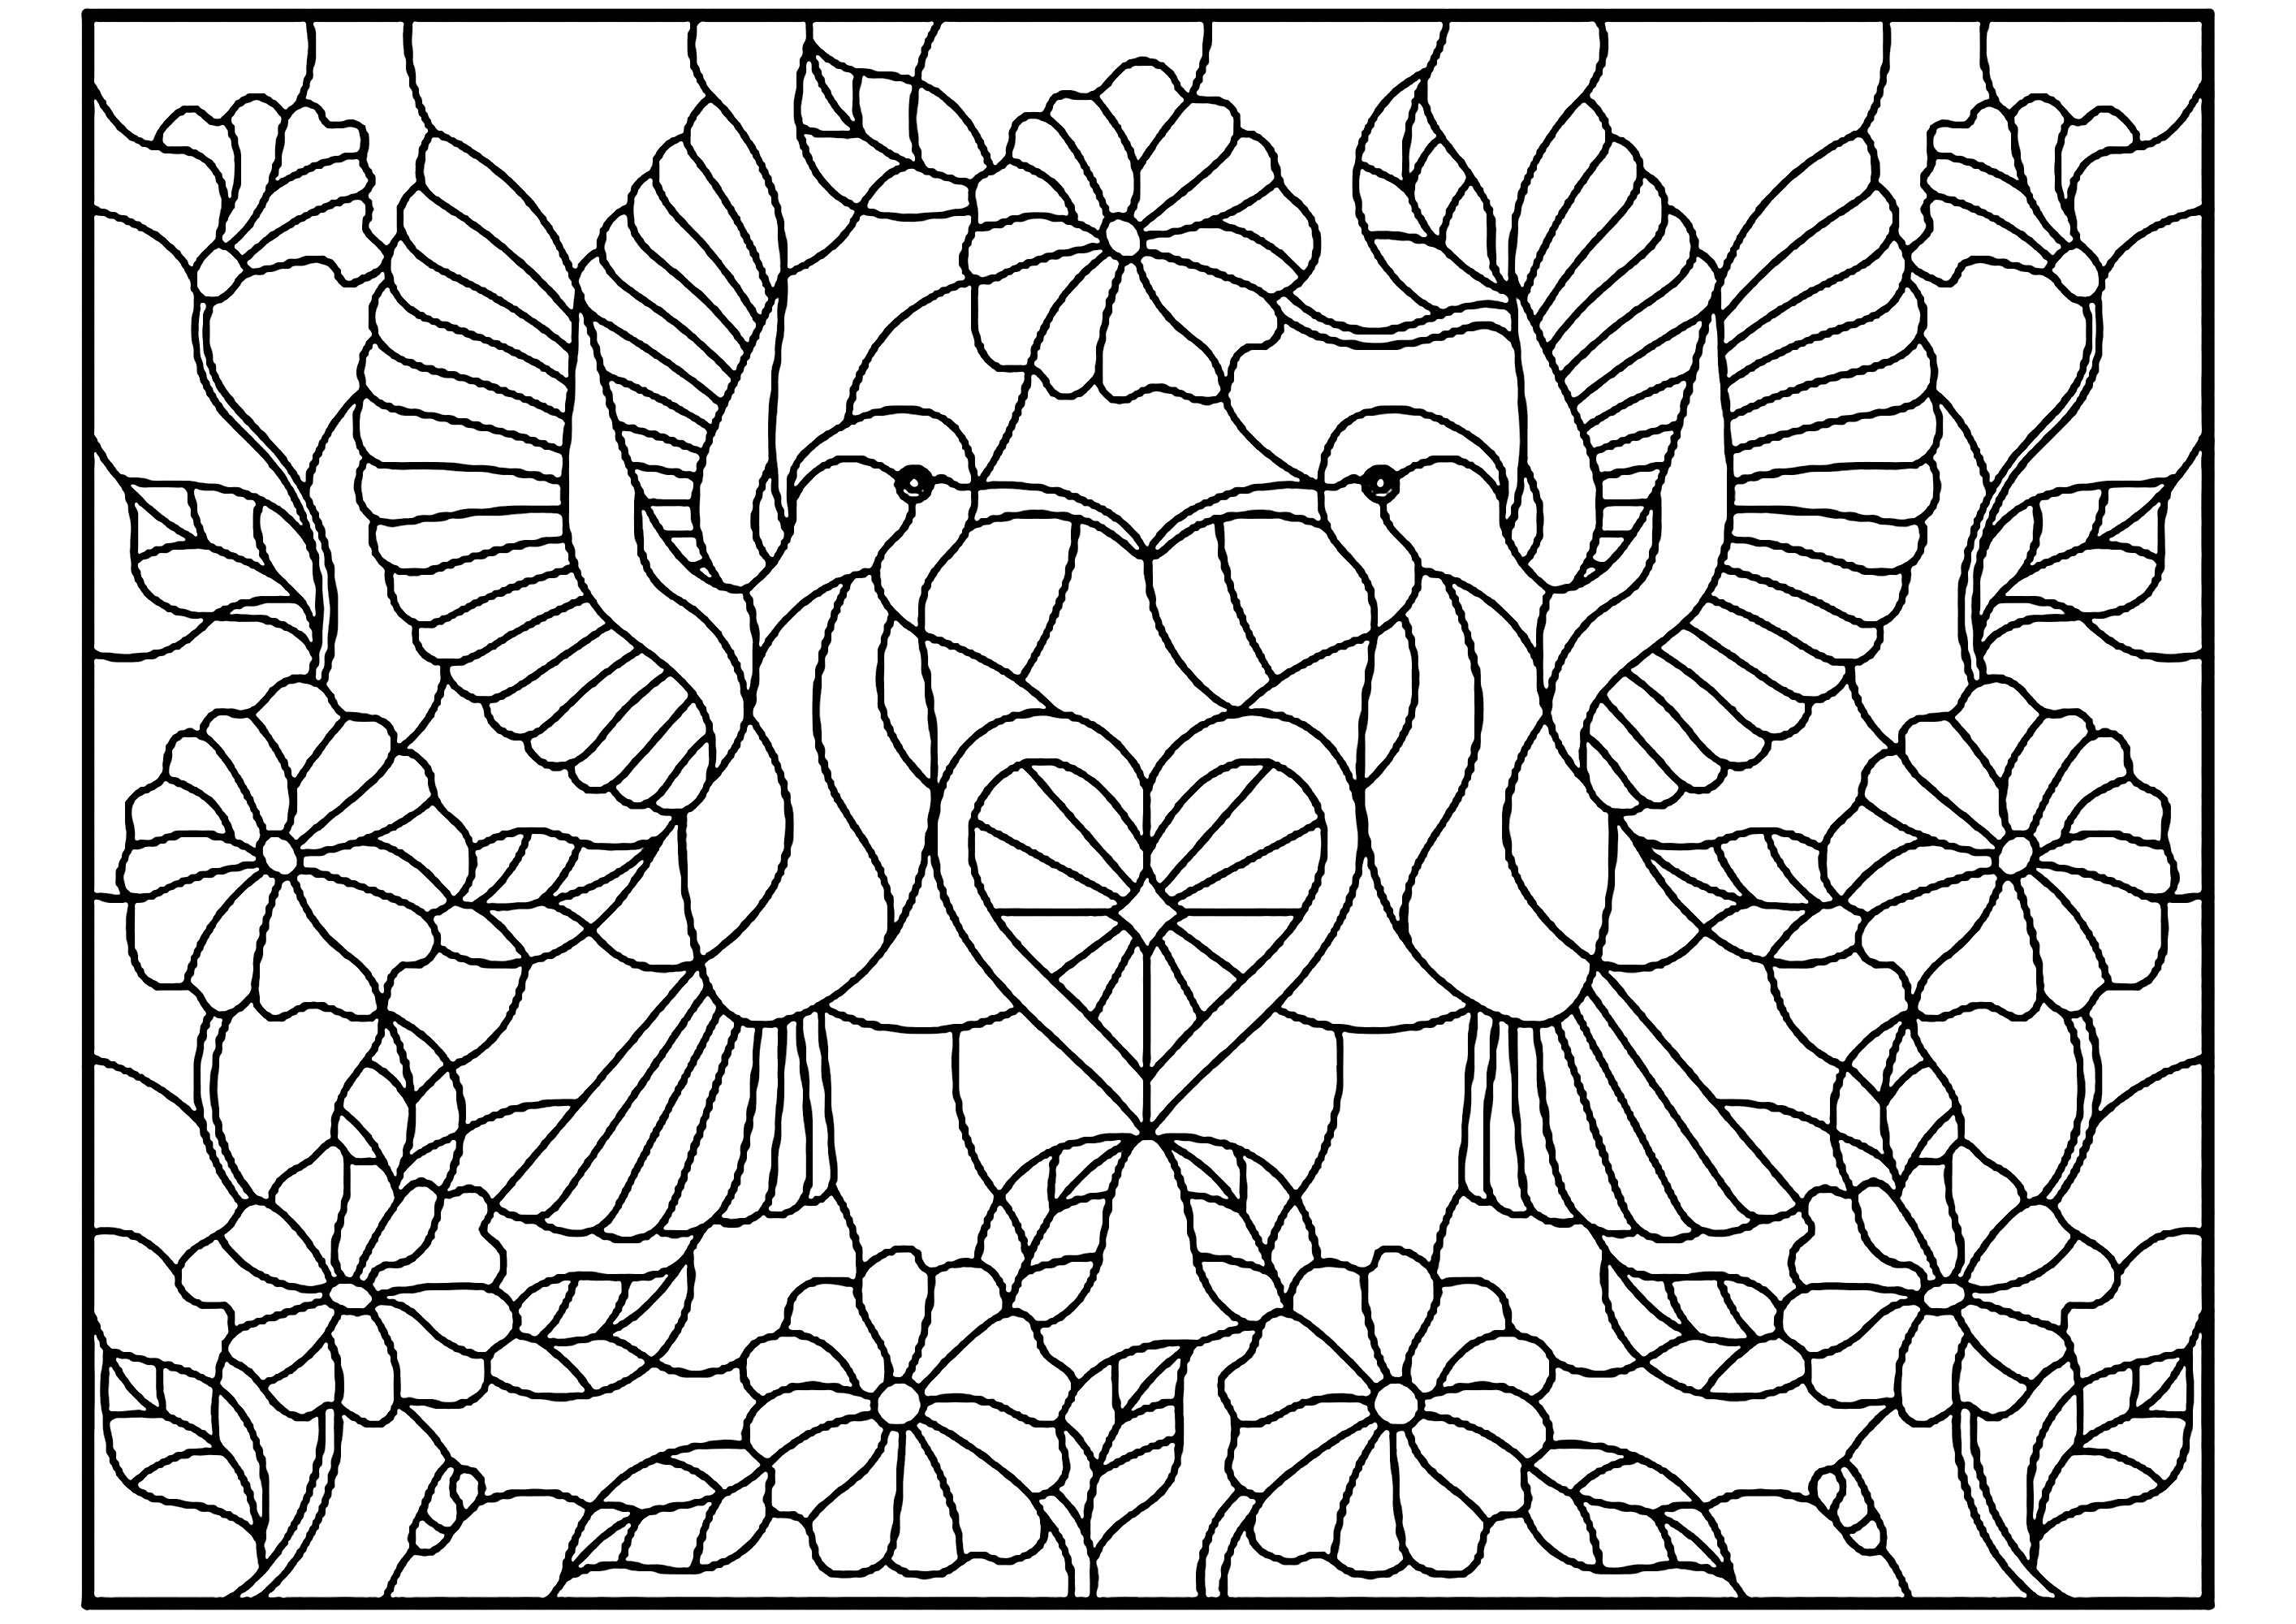 Zwei Vögel und ein kleines Herz in der Mitte, Glasmalerei Stil. Perfekte Symmetrie für ein Farbschema, das zweifellos zu einem außergewöhnlichen Endergebnis führen wird, Künstler : zagory   Quelle : 123rf